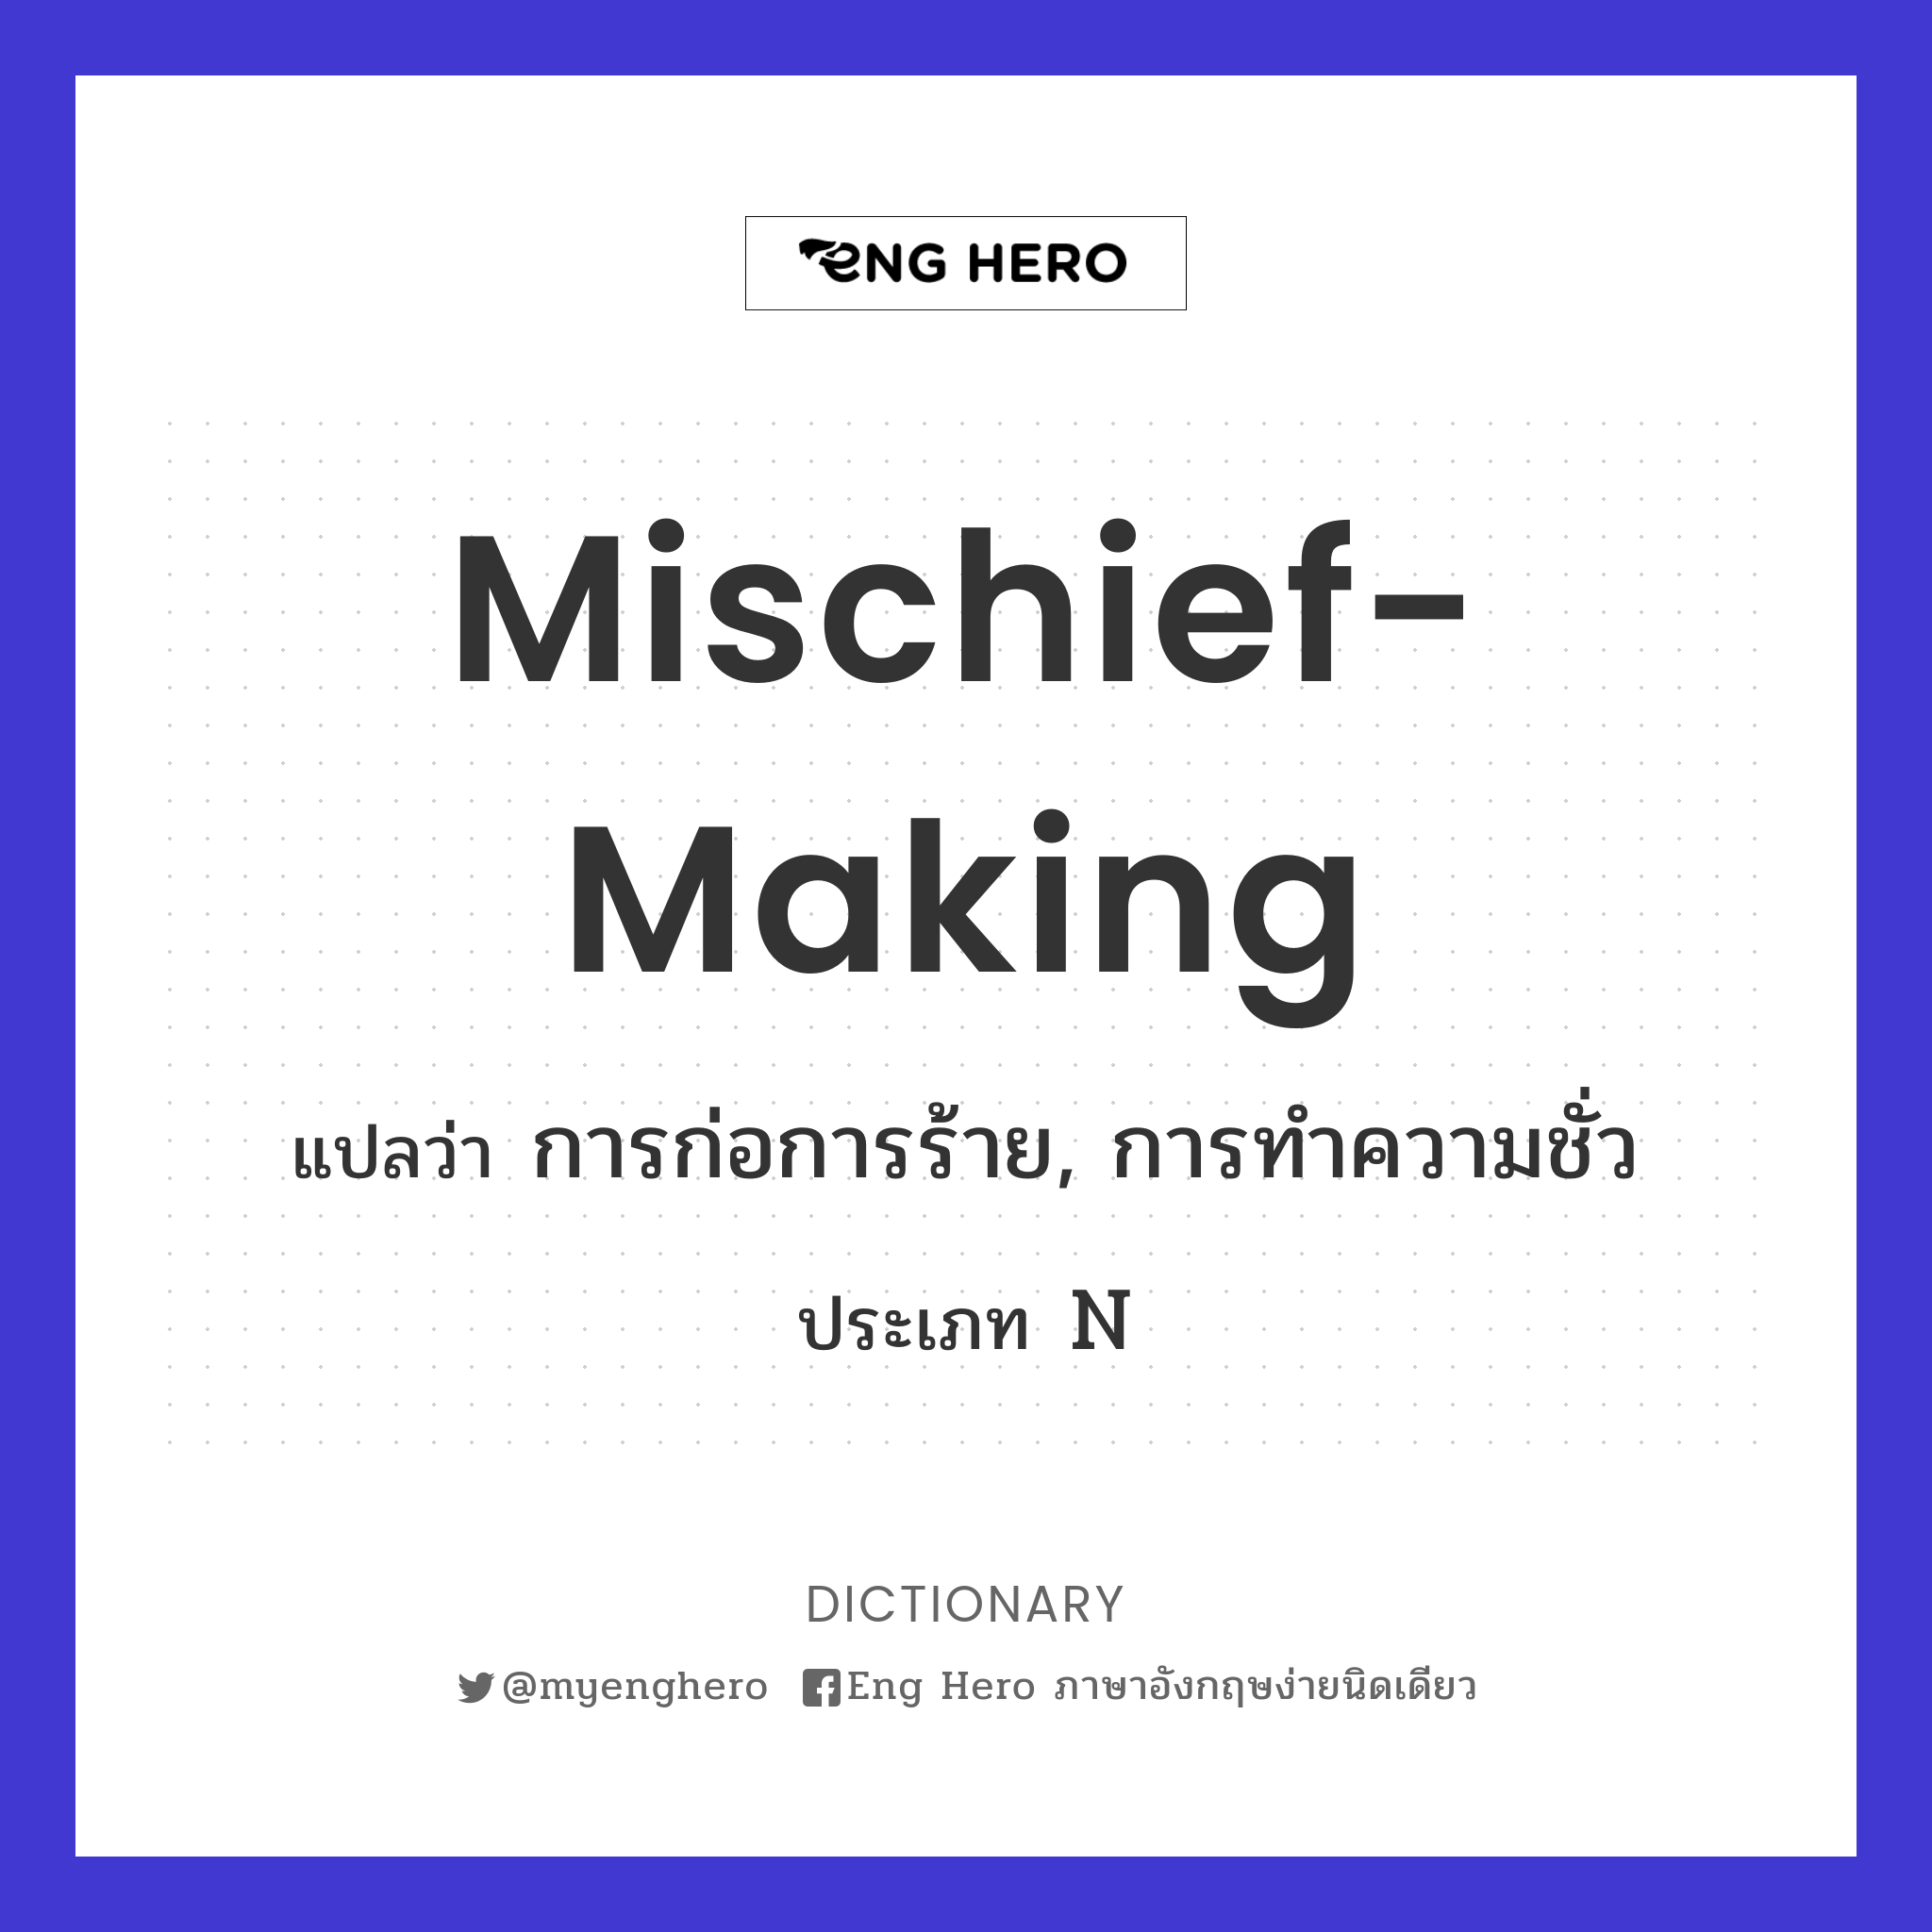 mischief-making